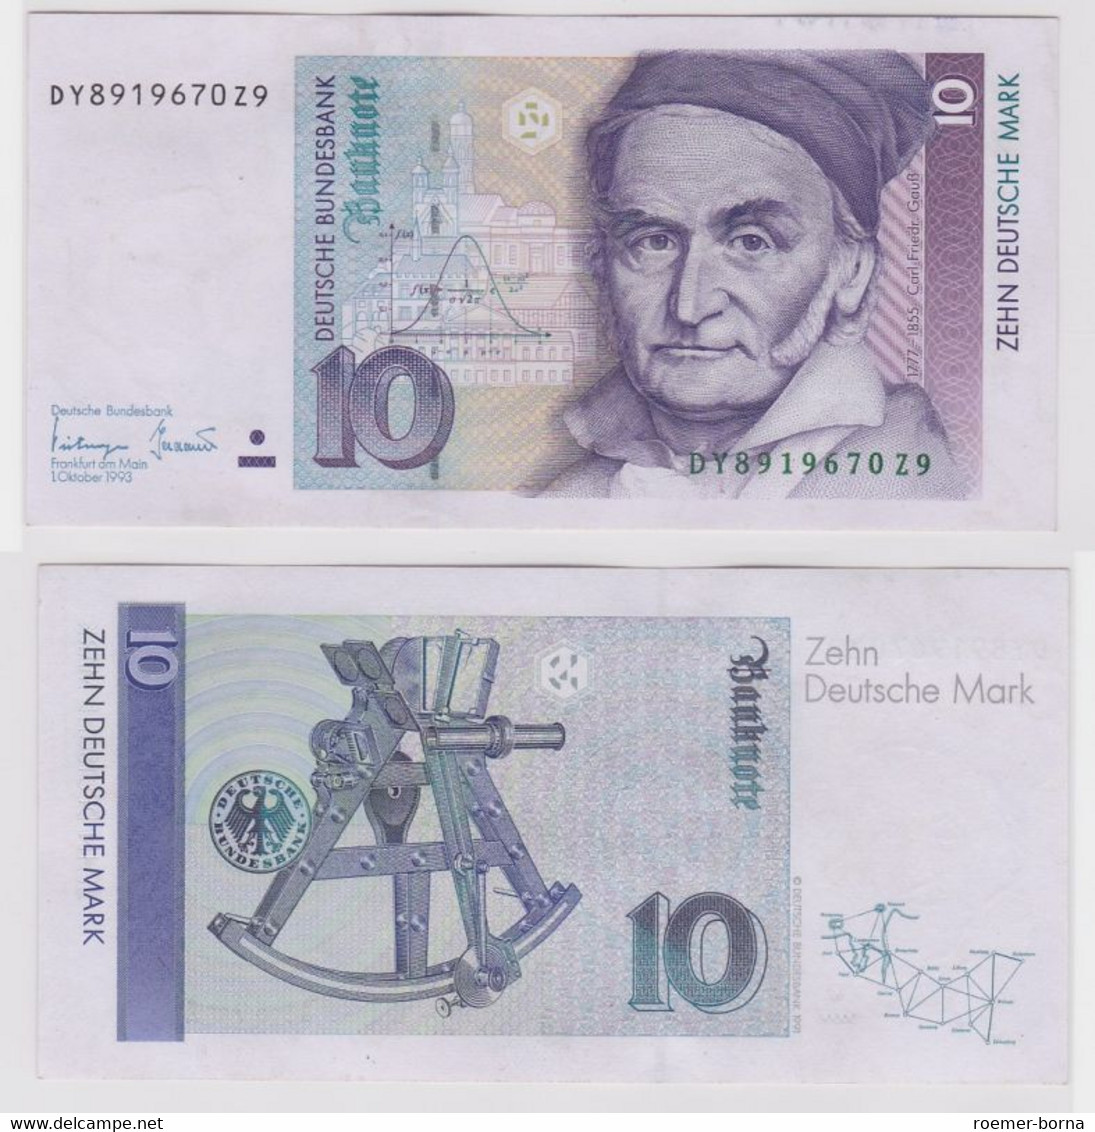 T146717 Banknote 10 DM Deutsche Mark Ro. 303a Schein 1.Okt. 1993 KN DY 8919670Z9 - 10 Deutsche Mark